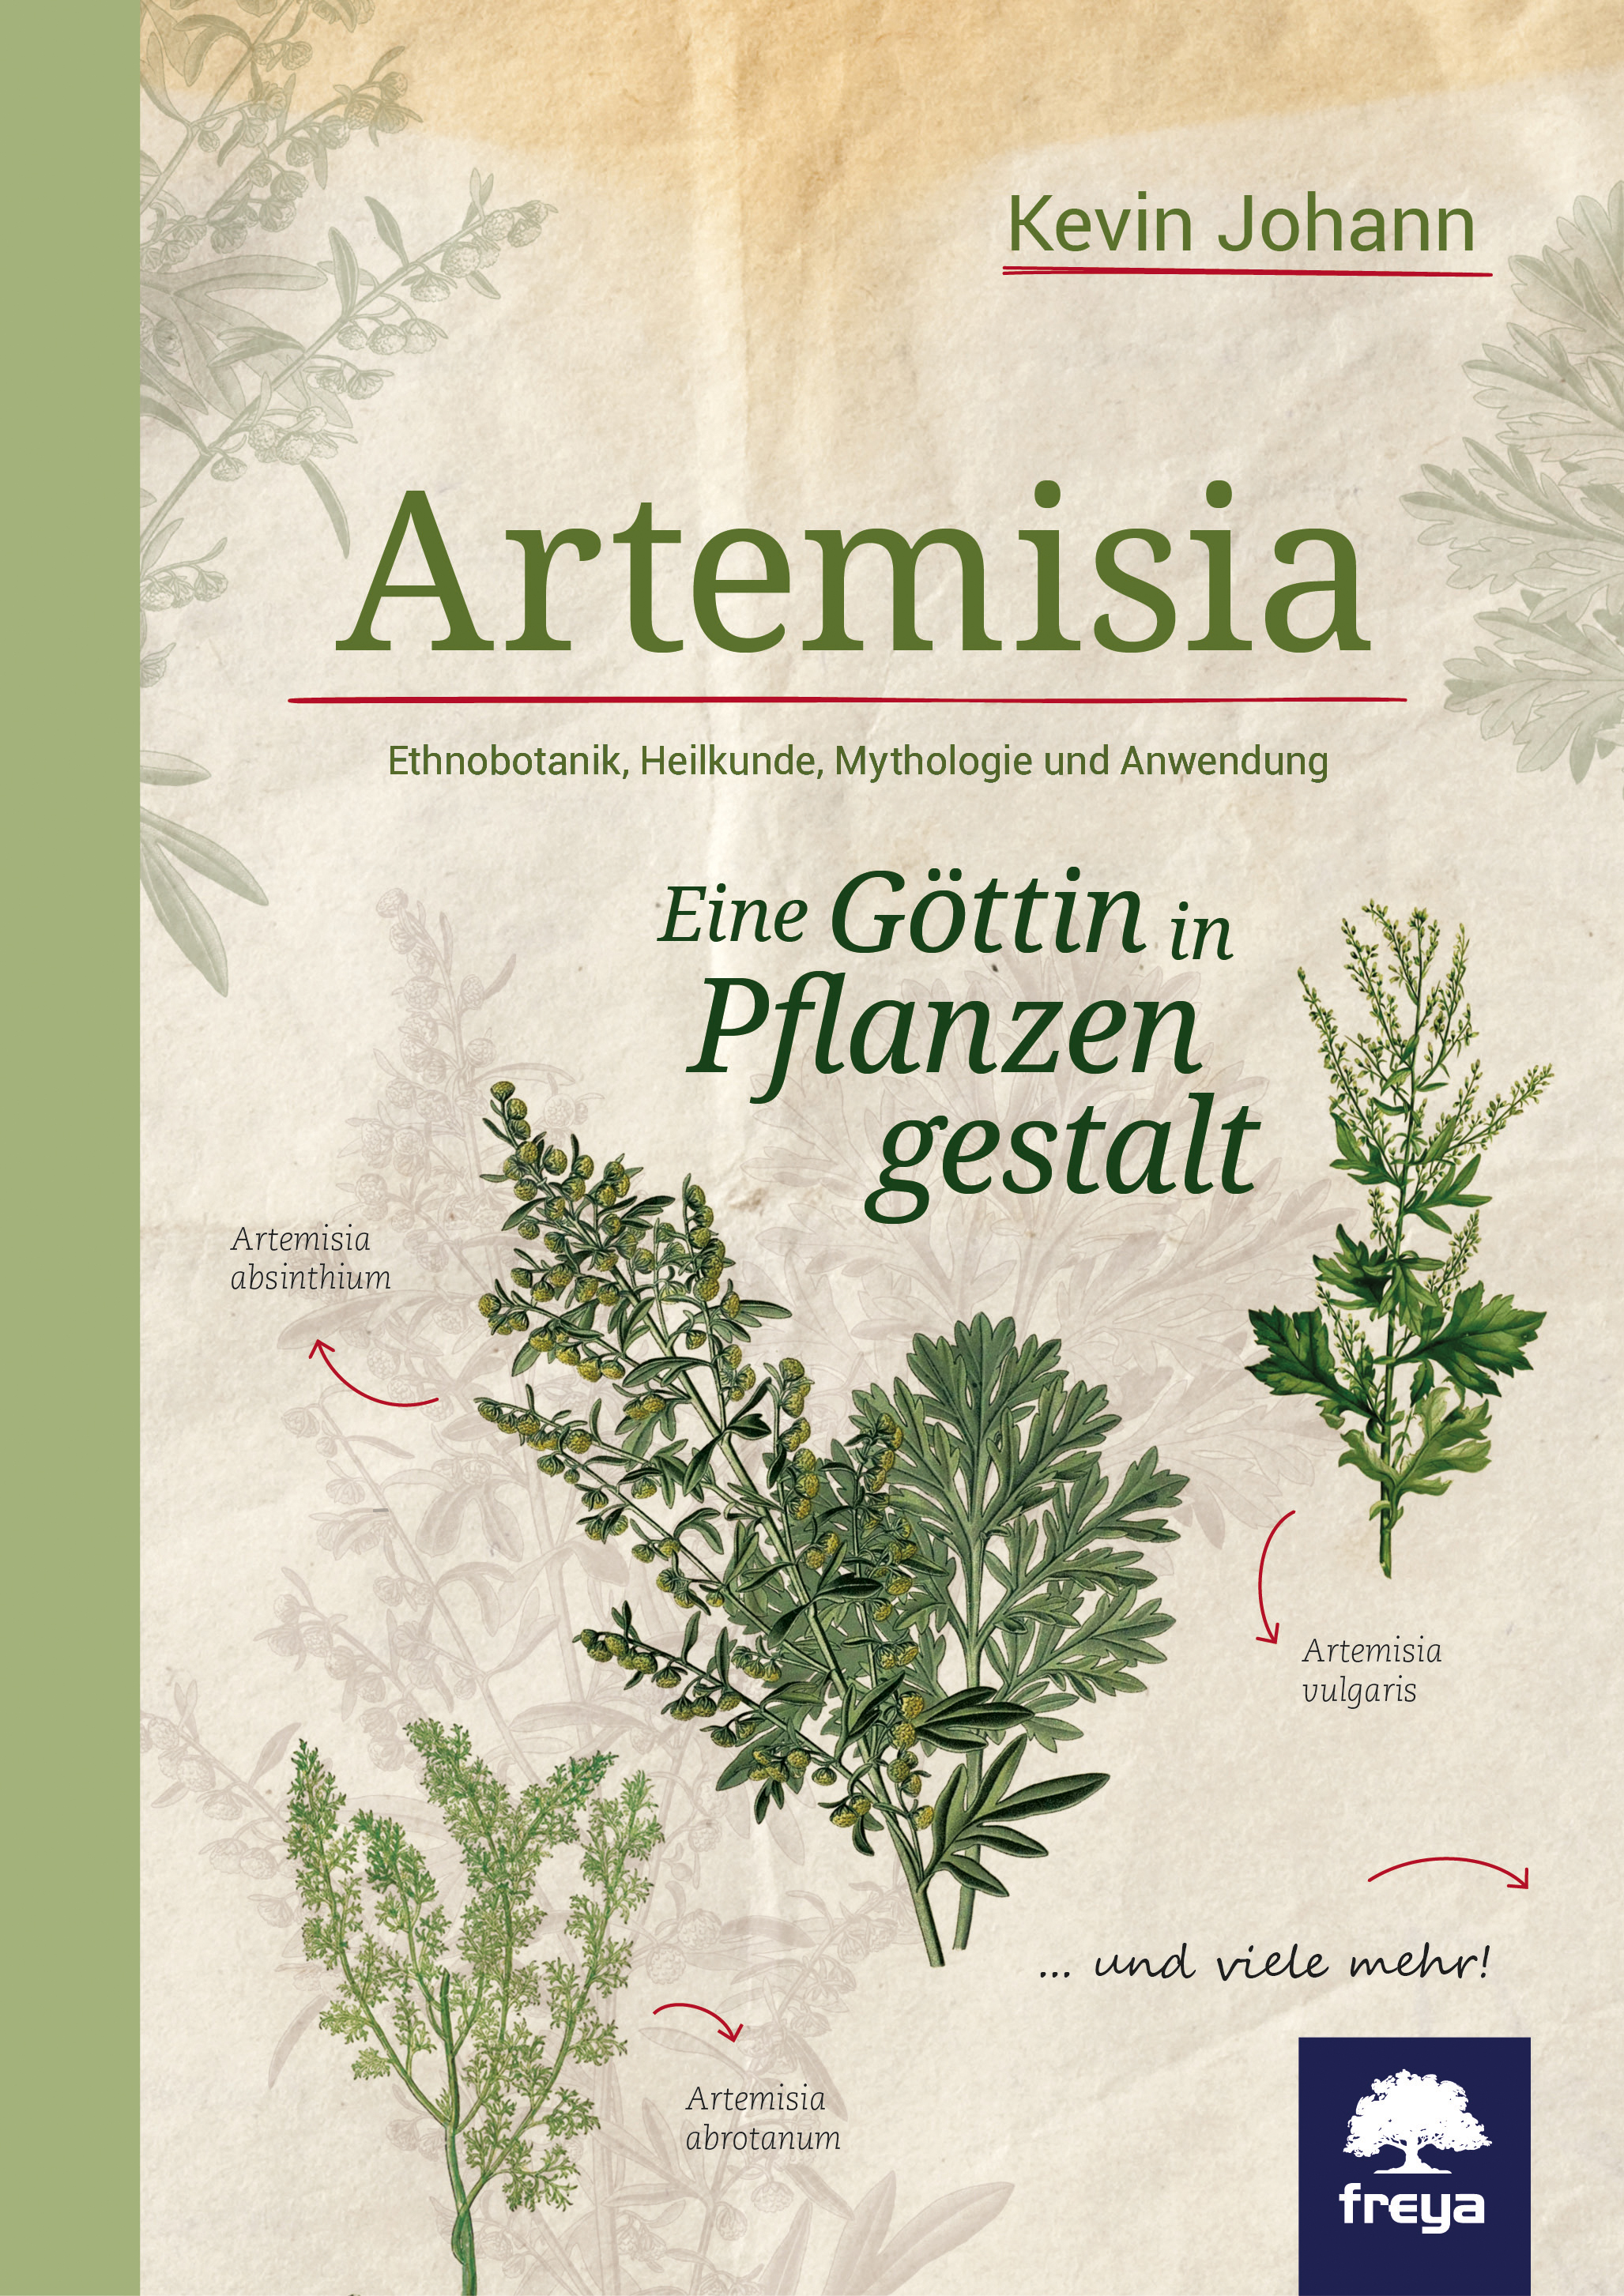 Artemisia   Pflanzen & Kräuter   Kräuterwissen   freya Verlag